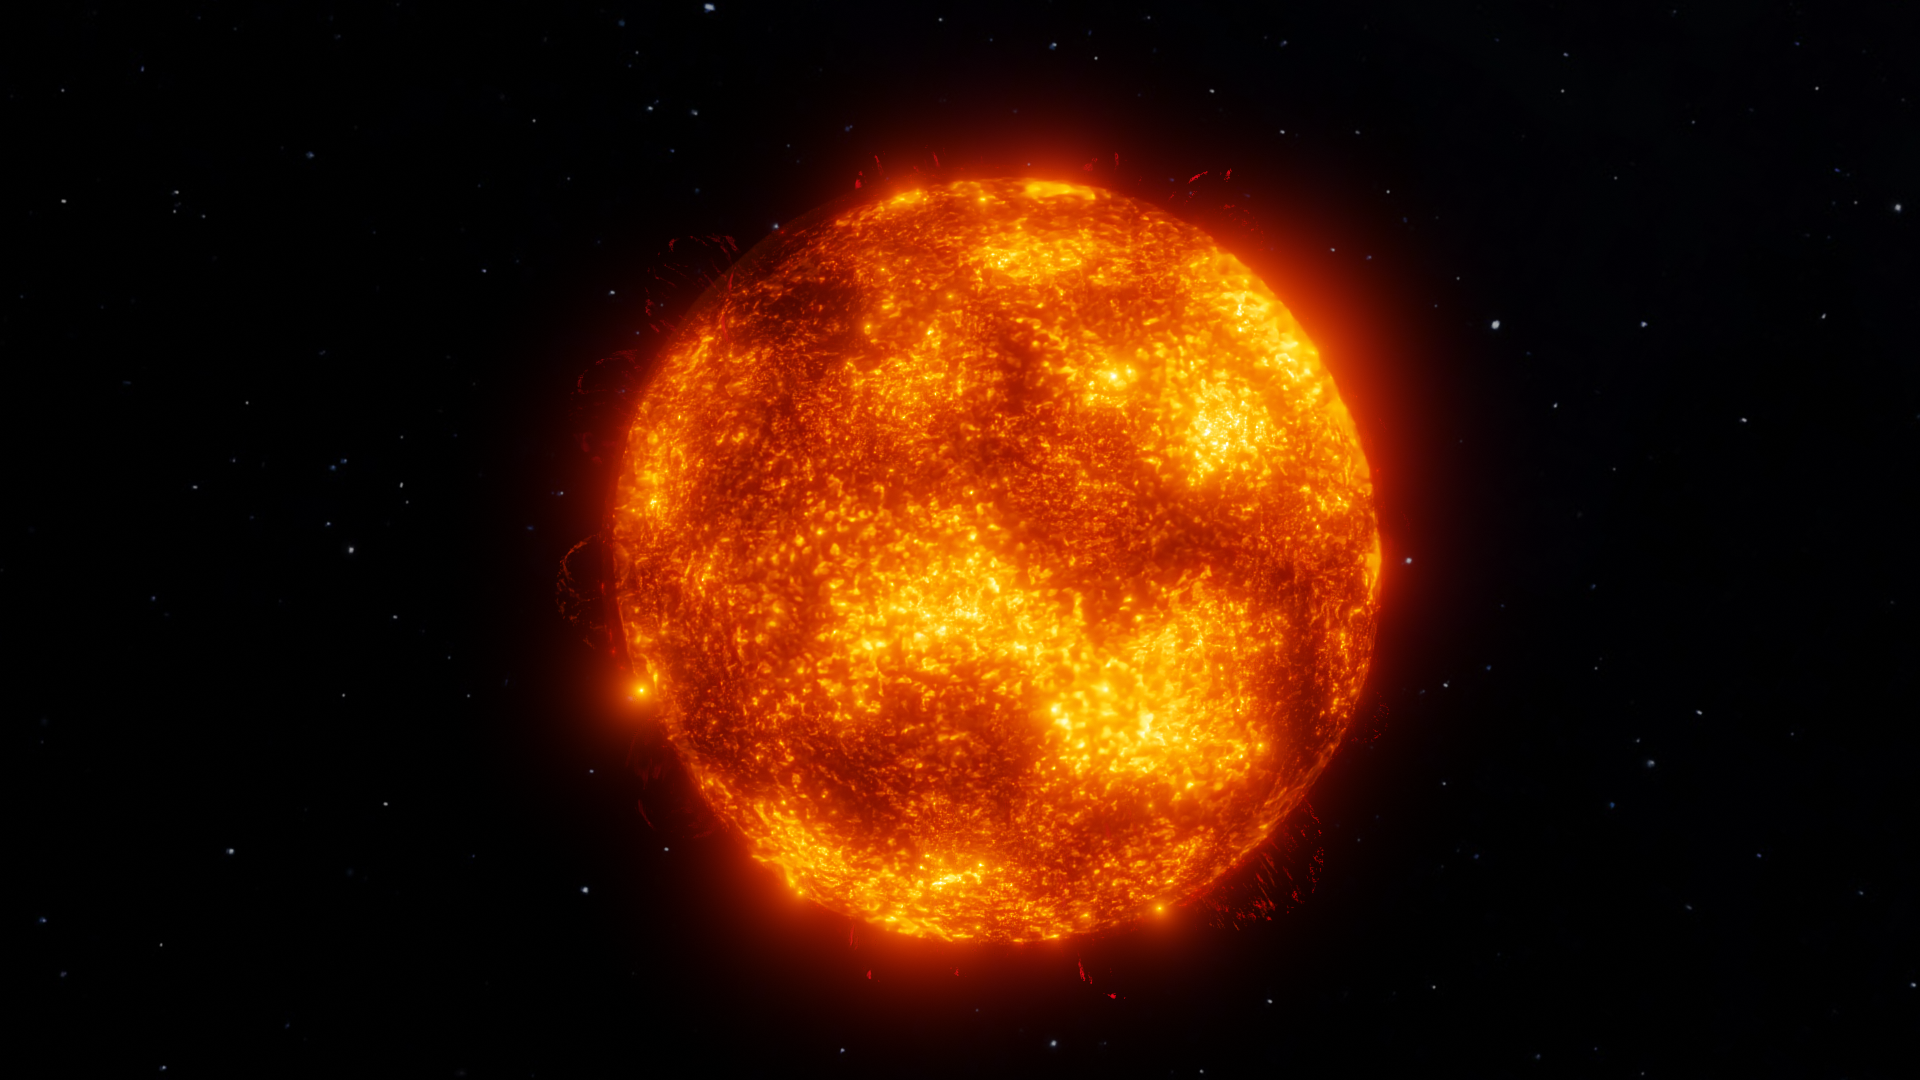 Space Sun Stars Red Sun Blender 3D Abstract 3D Graphics Digital Art 1920x1080